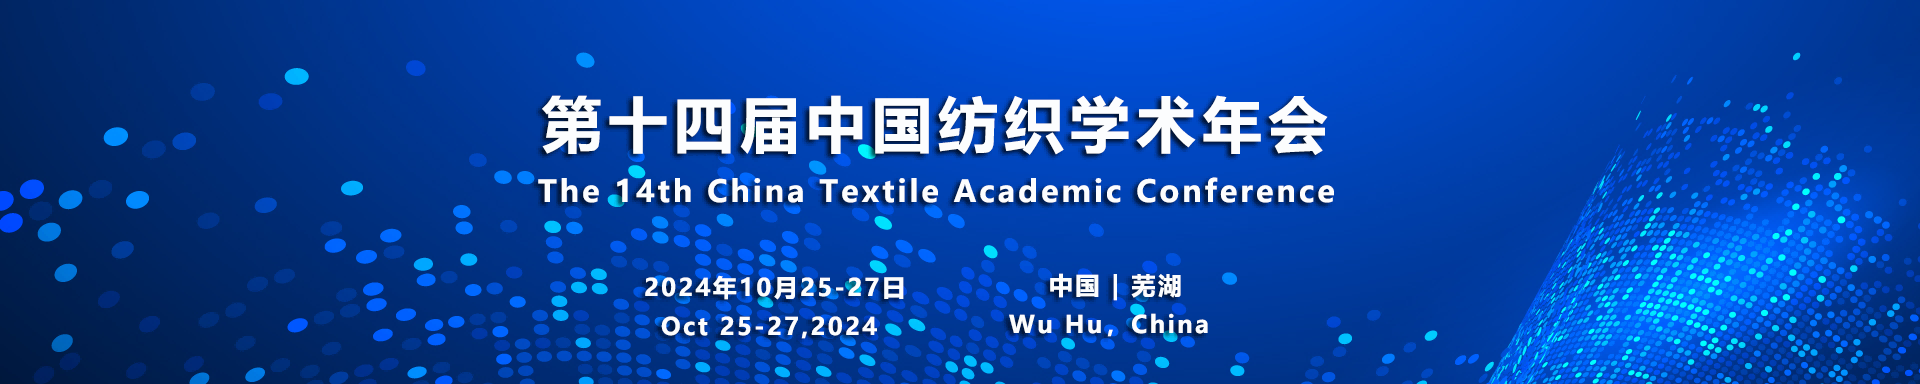 演讲嘉宾 - 第十四届中国纺织学术年会